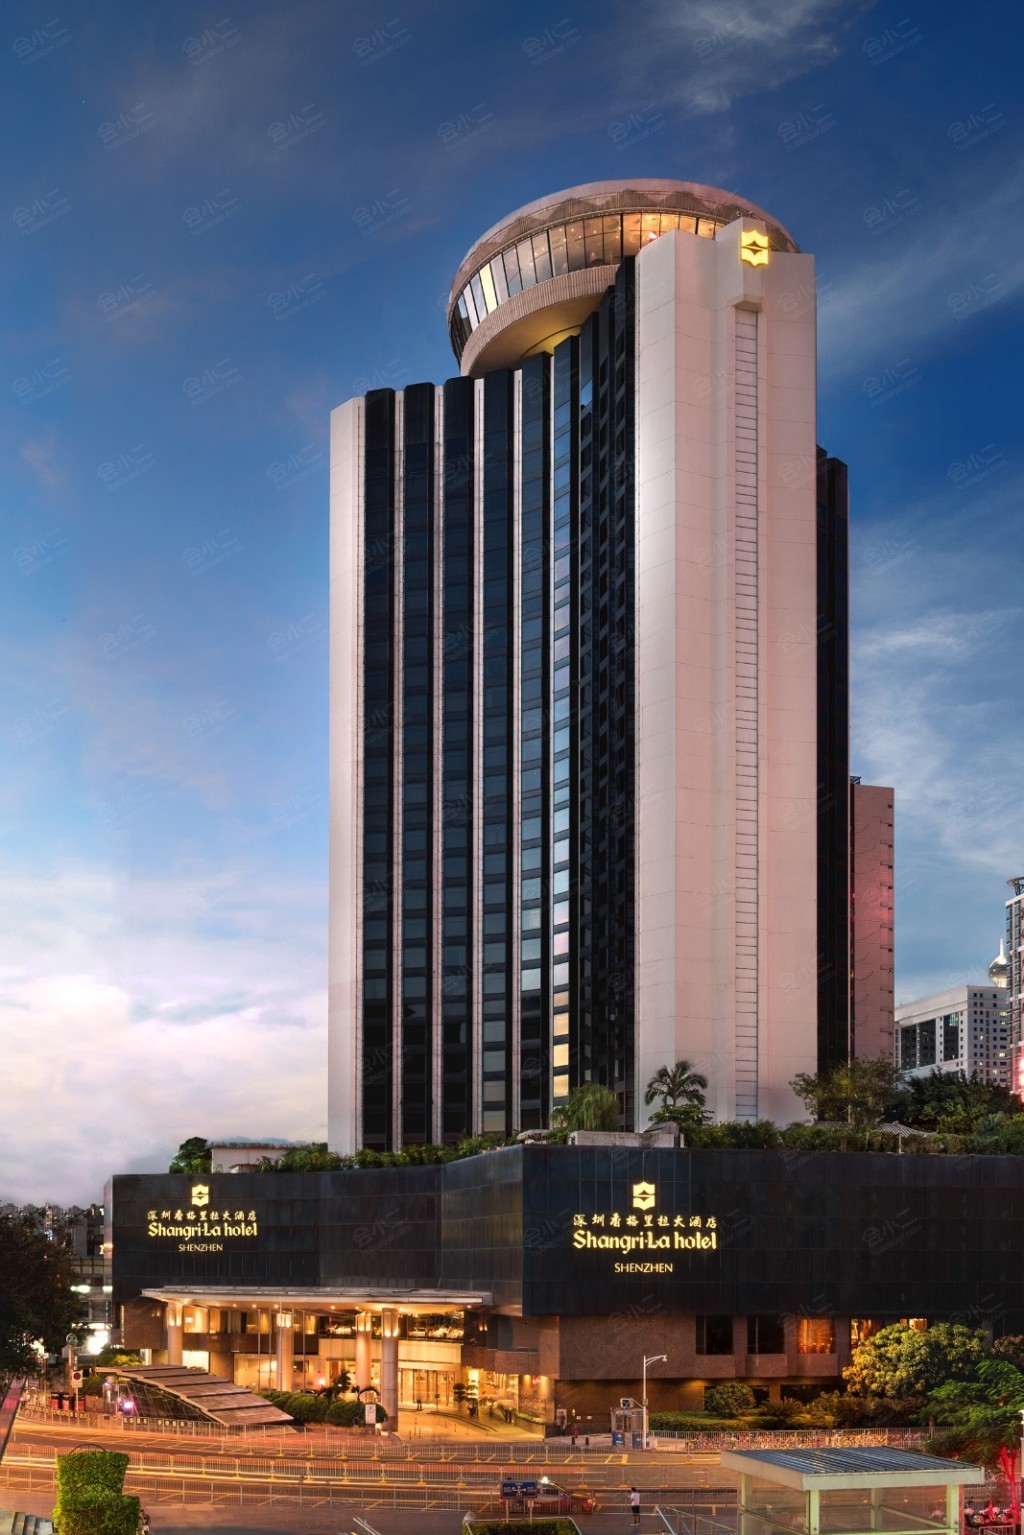 一家有草原特色的酒店 呼和浩特香格里拉大酒店 - 中国日报网